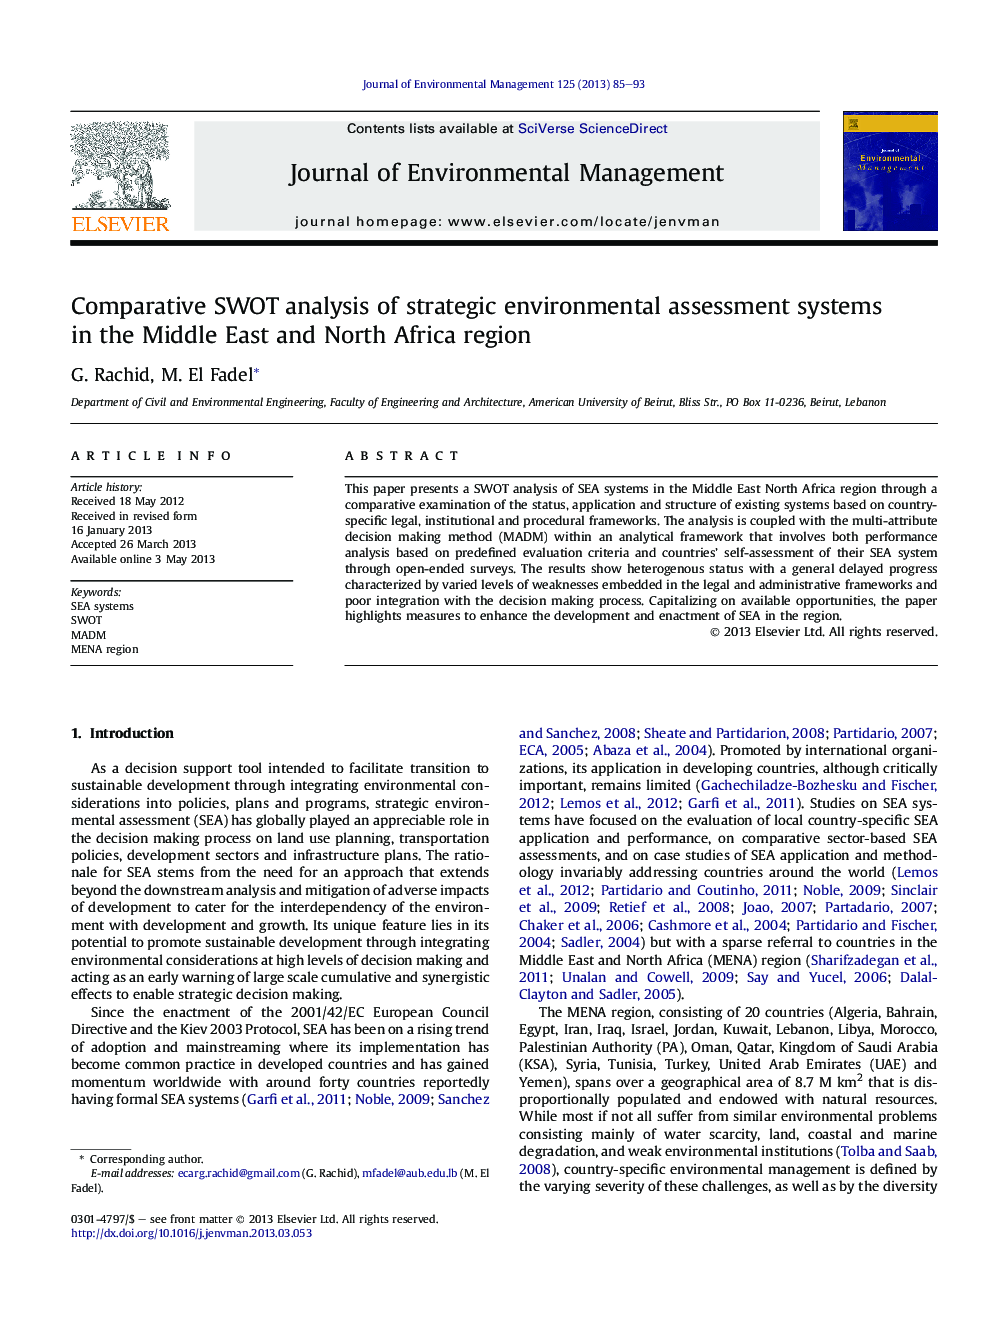 تجزیه و تحلیل تطبیقی SWOT از سیستم های ارزیابی زیست محیطی استراتژیک در خاور میانه و شمال آفریقا